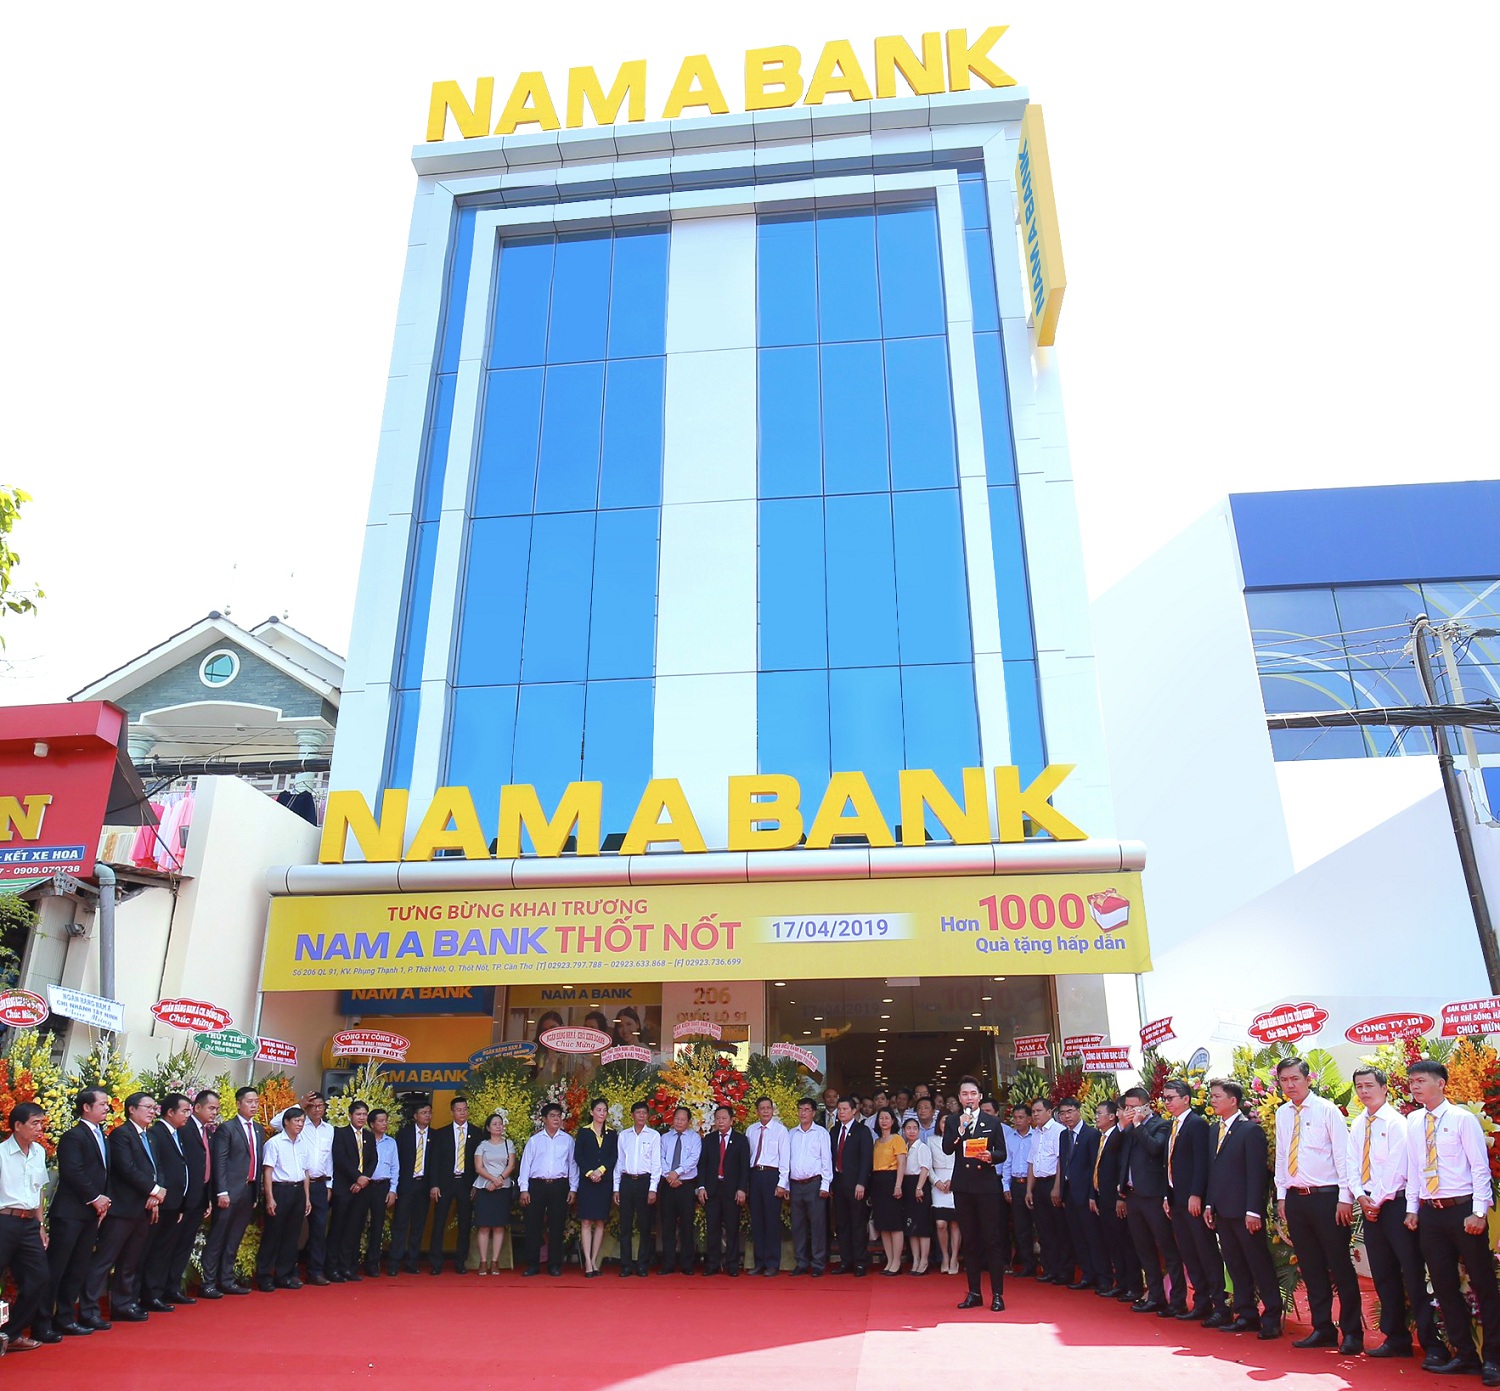 Nam A Bank Thốt Nốt được xây dựng với kiến trúc khang trang, mô hình ngân hàng hiện đại mang đến sự thuận tiện cho khách hàng giao dịch.